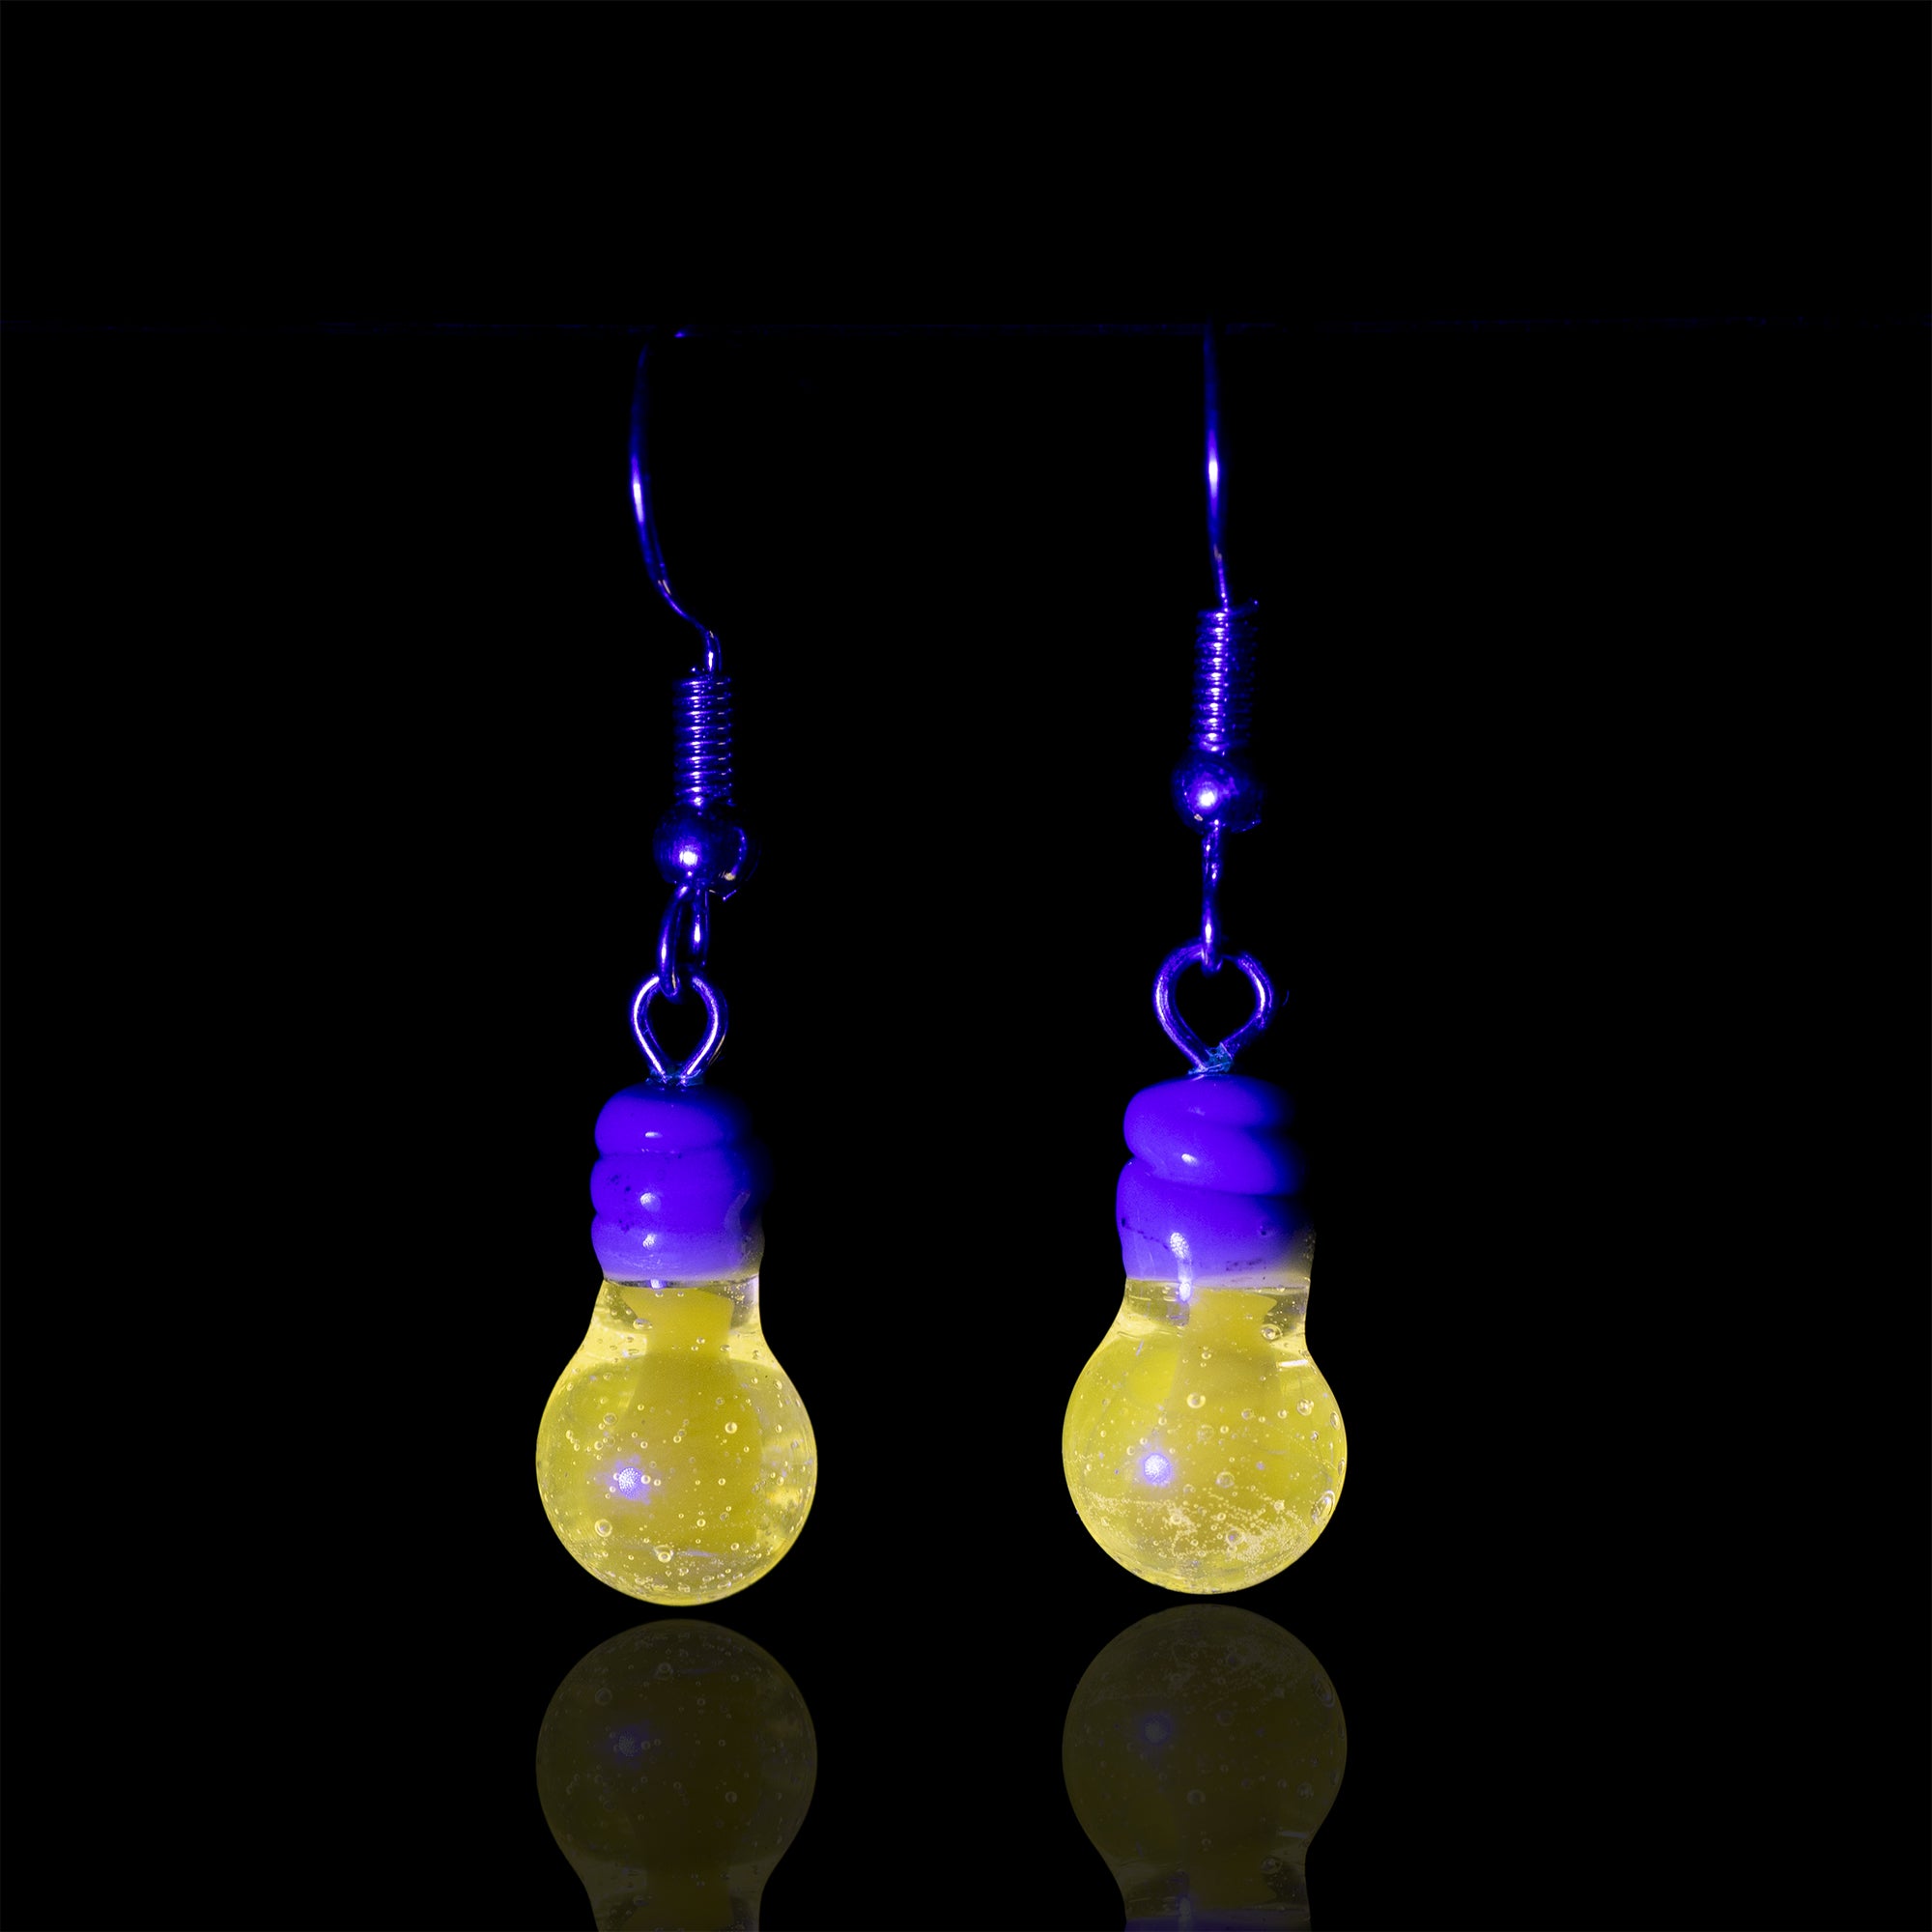 A pair of mmMelty light bulb earrings under UV light showcasing the glow of the light bulb.  